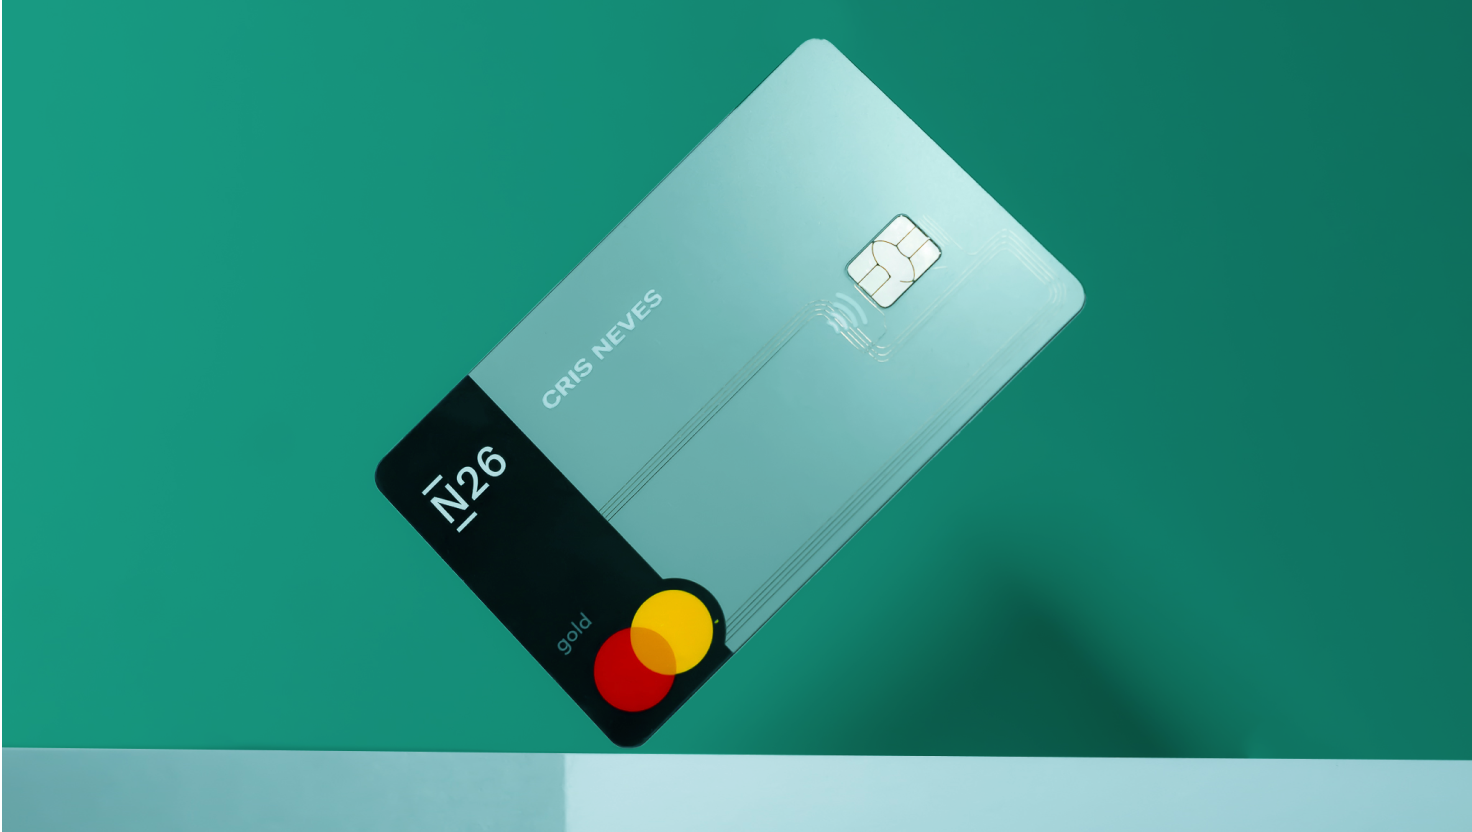  Ngân hàng N26 đến Brazil bằng thẻ tín dụng minh bạch